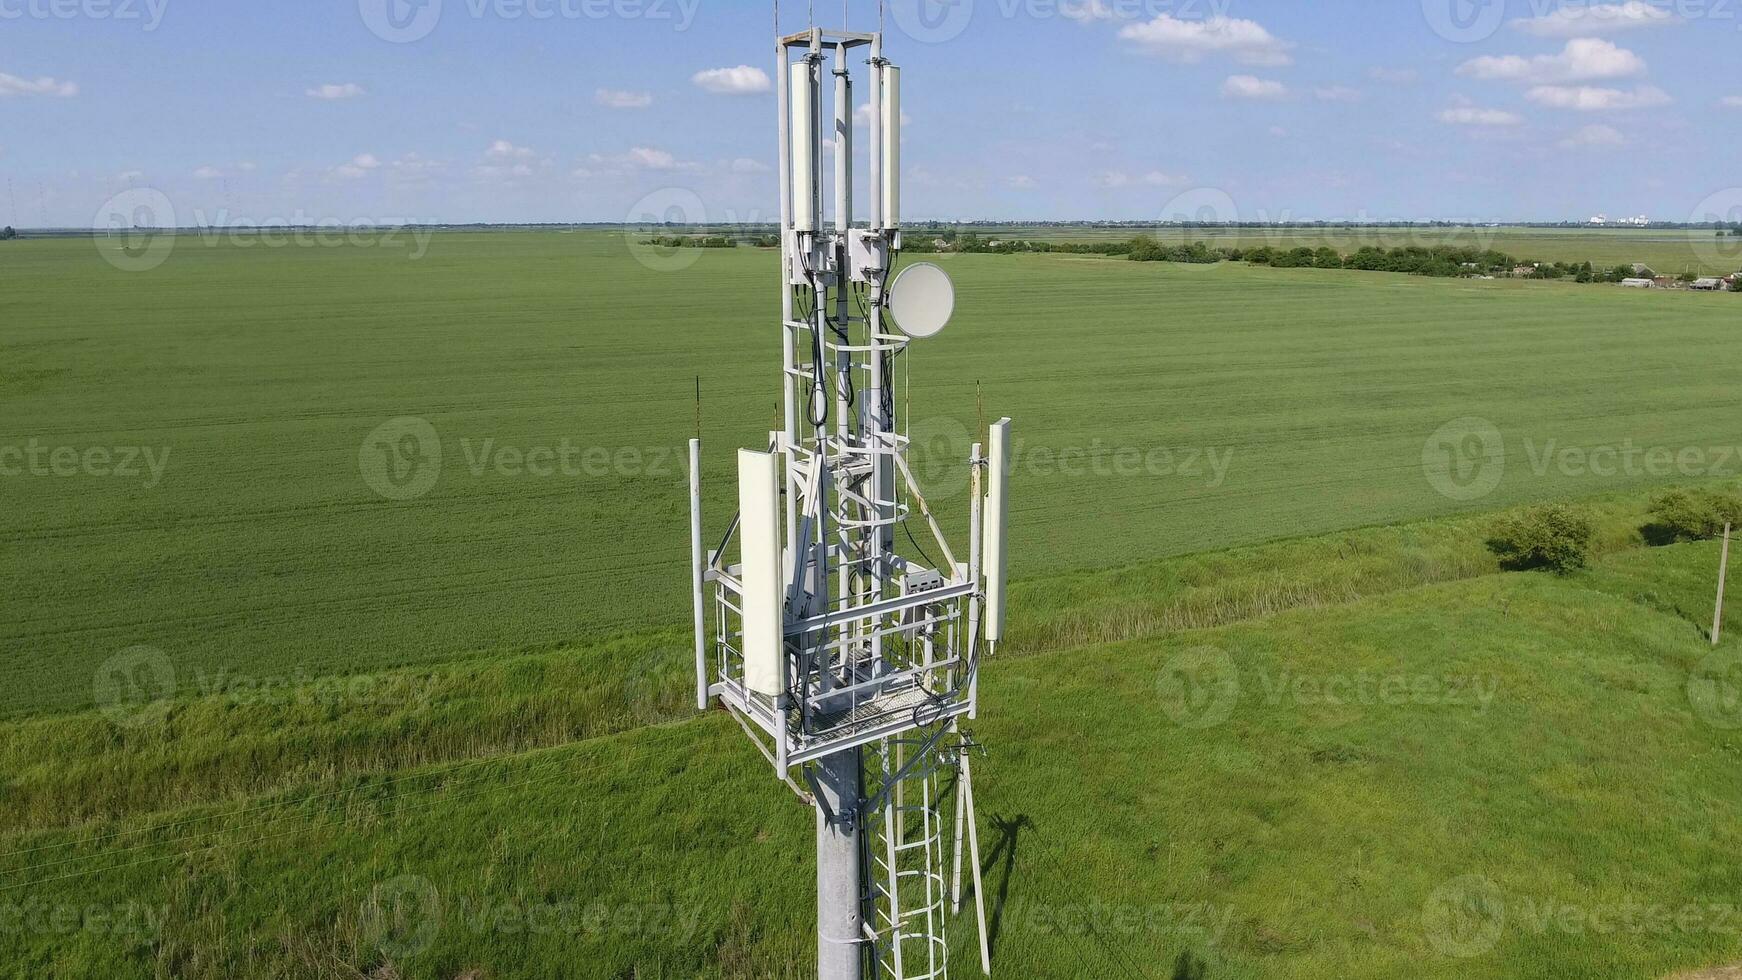 cellulaire la tour. équipement pour transmission cellulaire et mobile signal photo